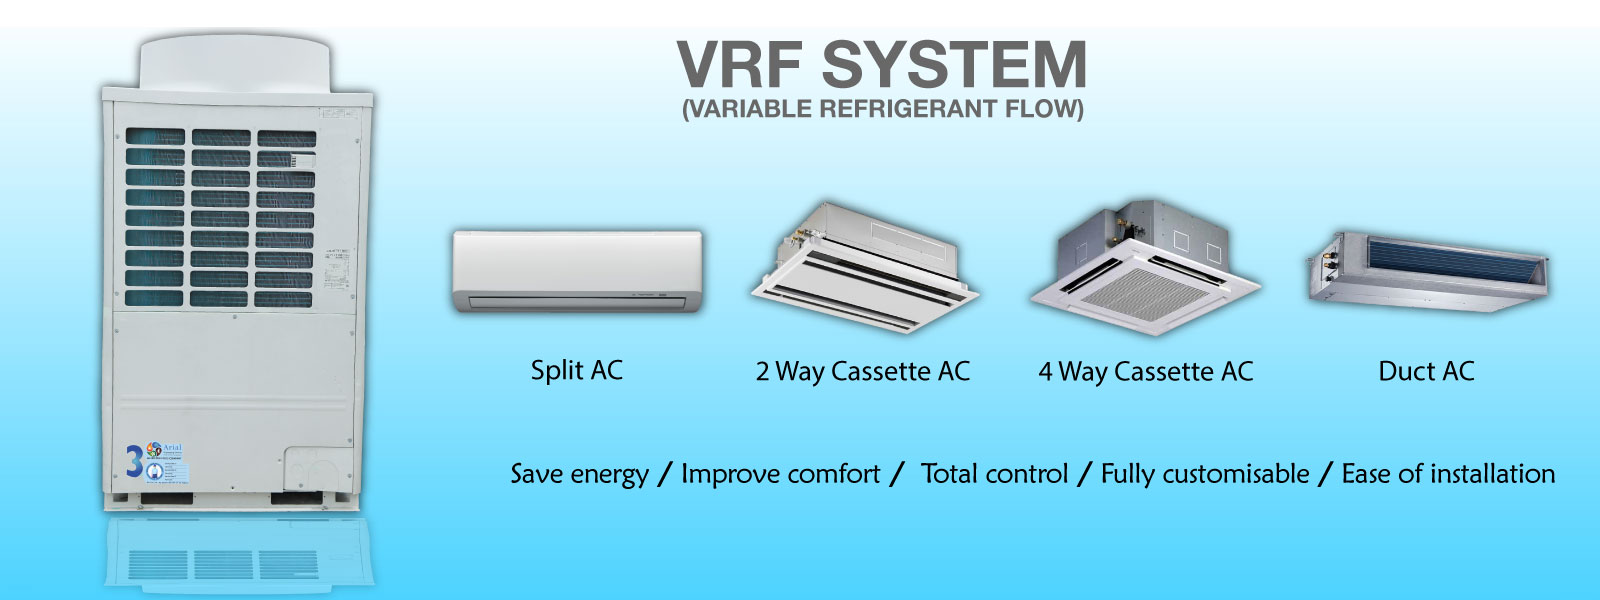 VRF System 